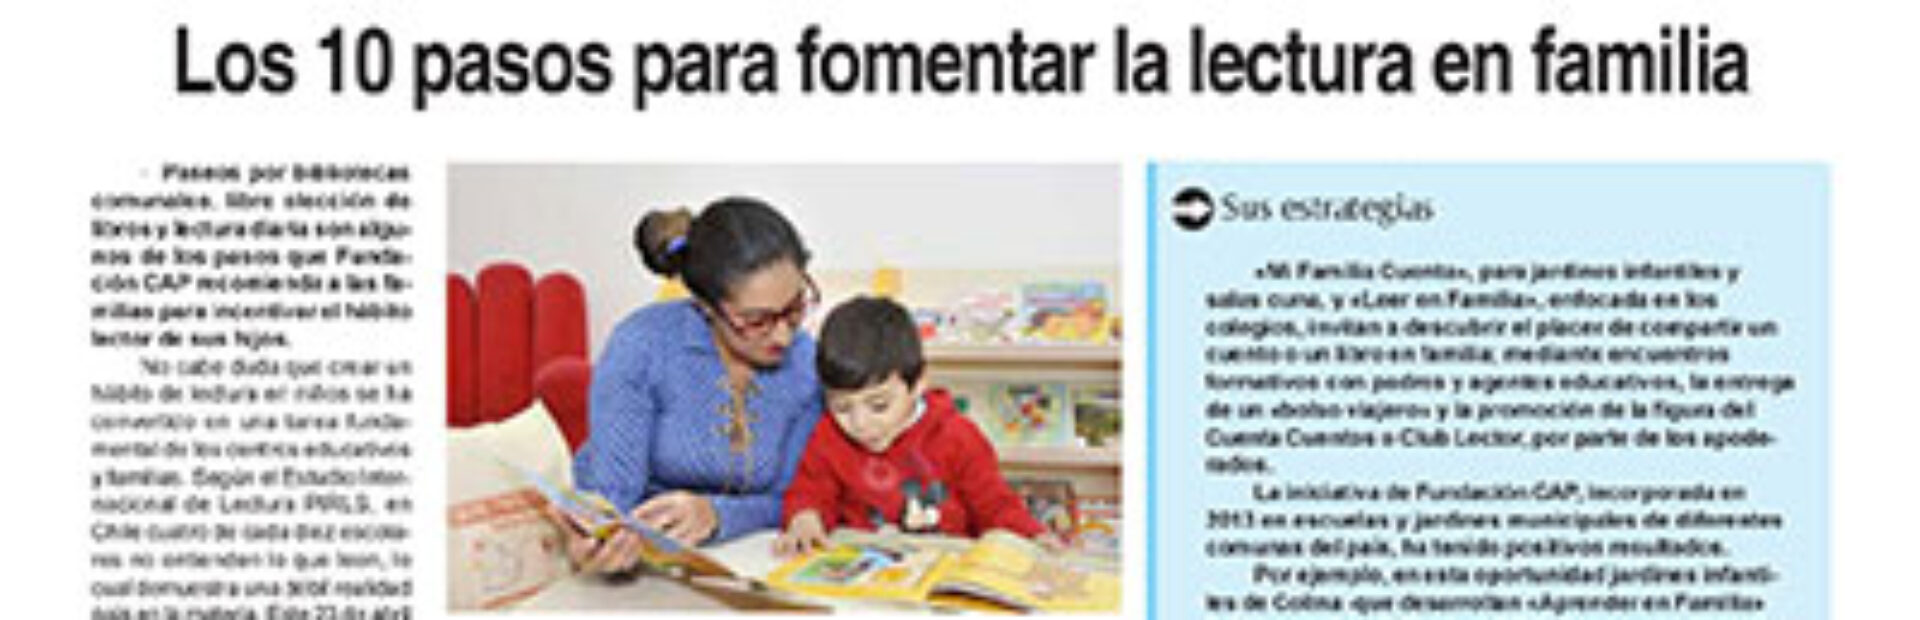 Los 10 pasos para fomentar la lectura en familia – Diario la Región